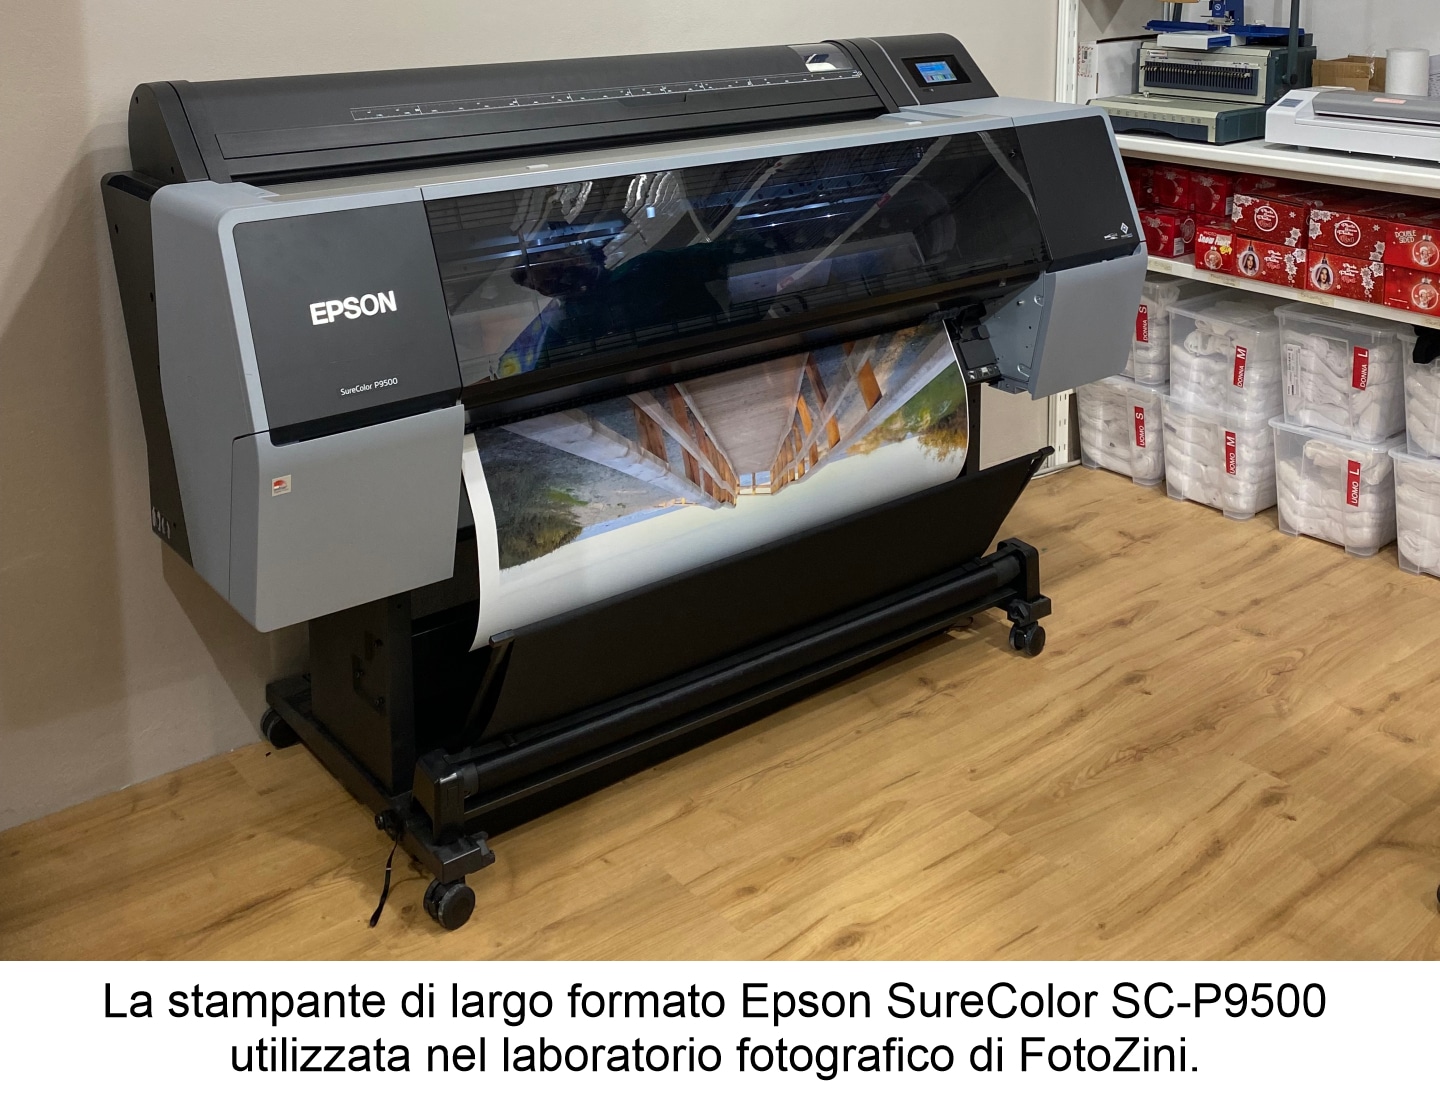 FotoZini sceglie la qualità delle stampanti Epson thumbnail